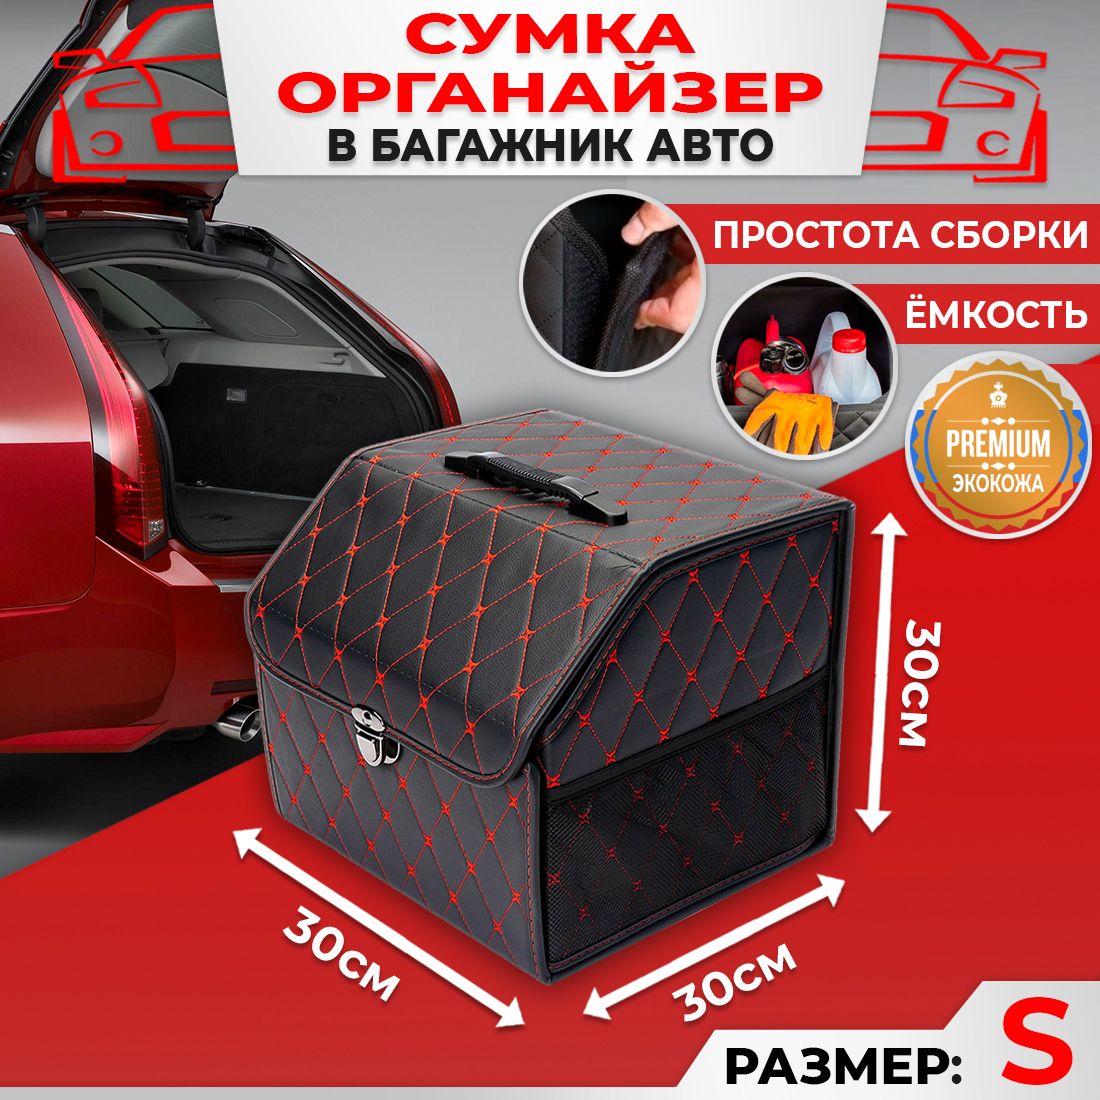 Сумка Саквояж Органайзер в багажник автомобиля размер 30х30х30см цвет черный ромб бабочка красный